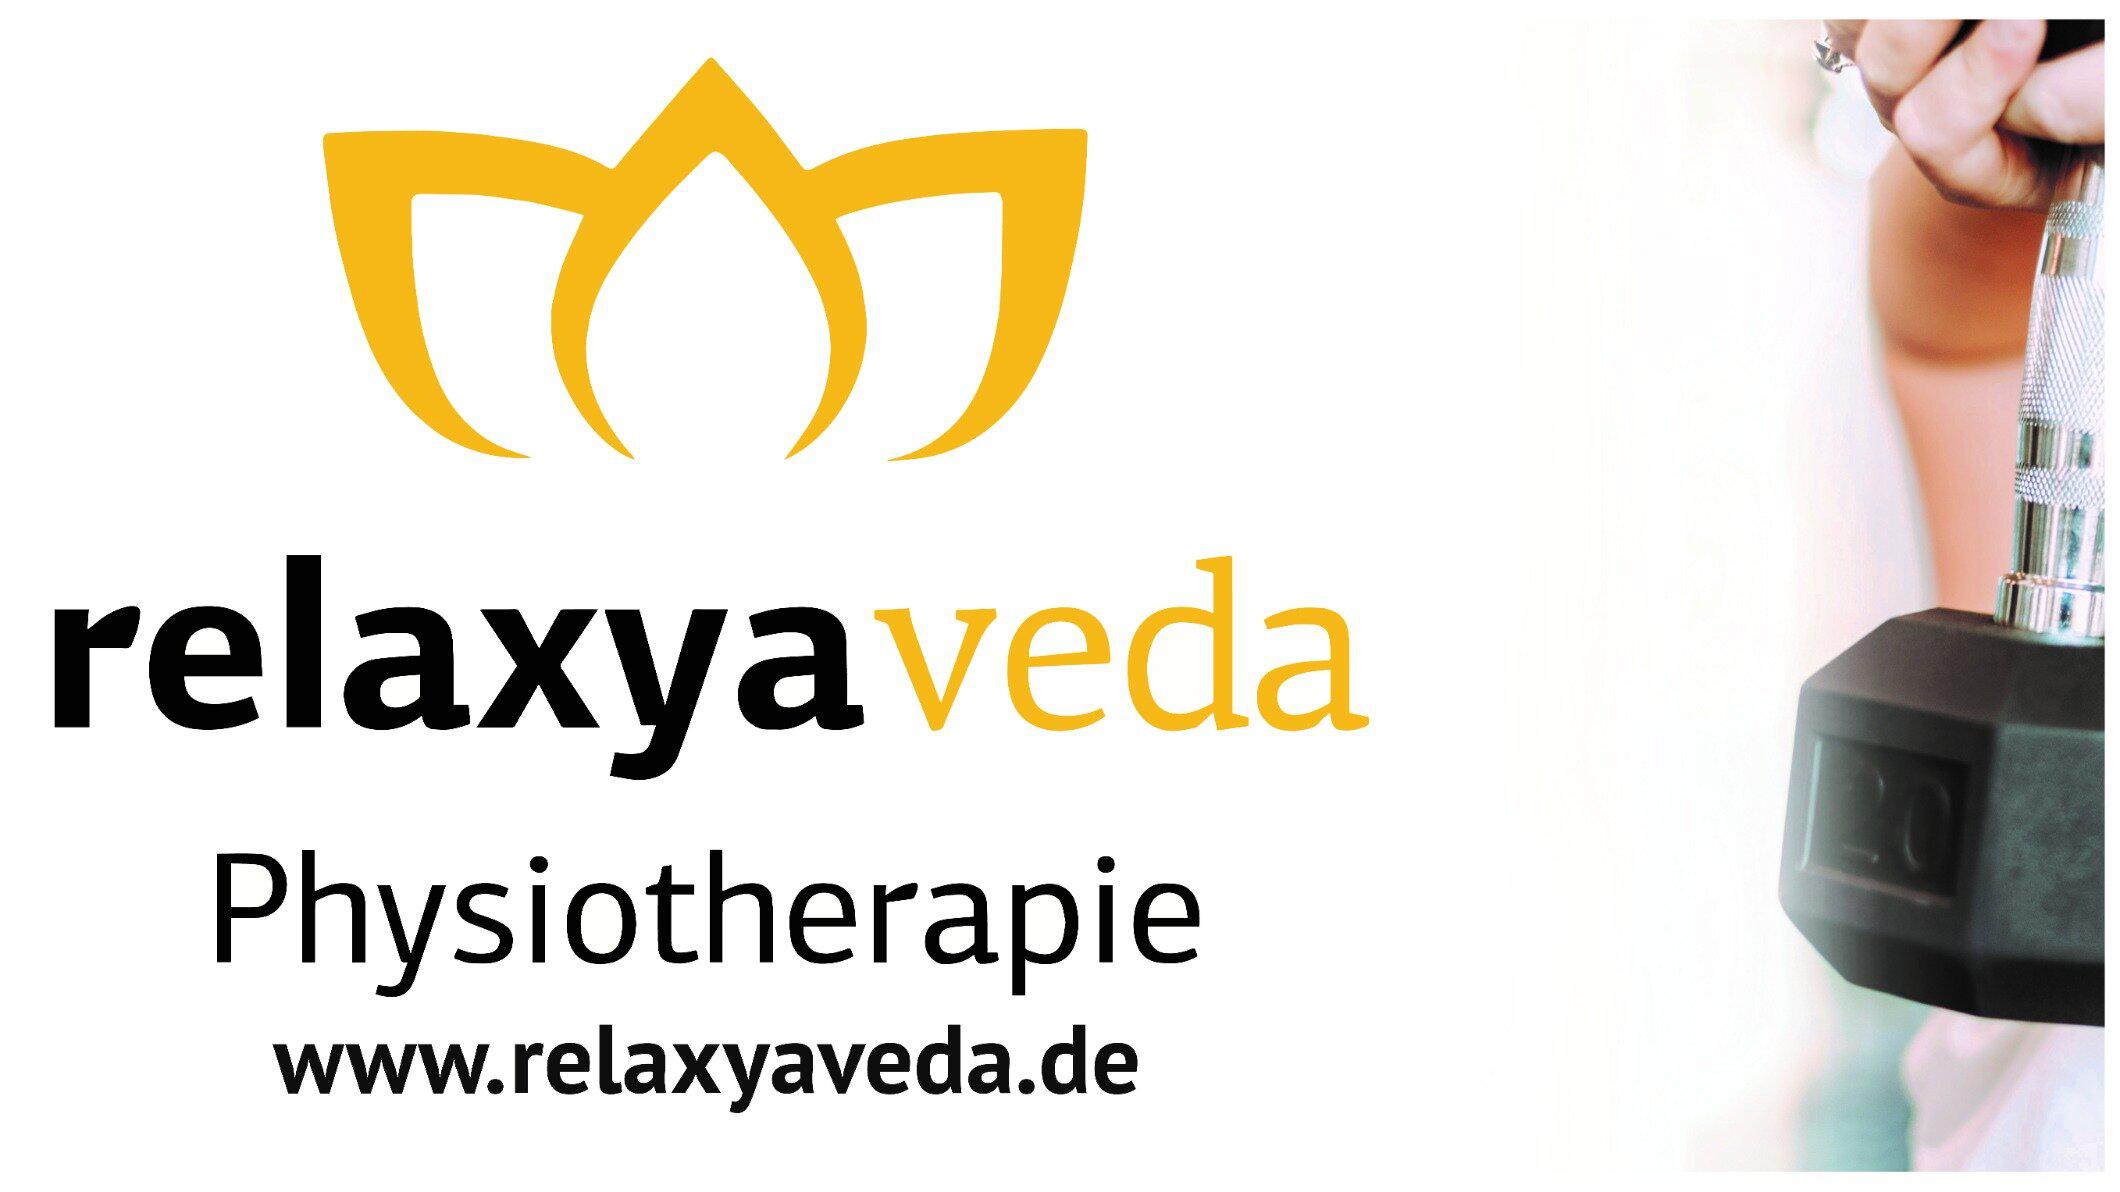 Bild 1 relaxyaveda - Physio- und Ergotherapie in Bielefeld